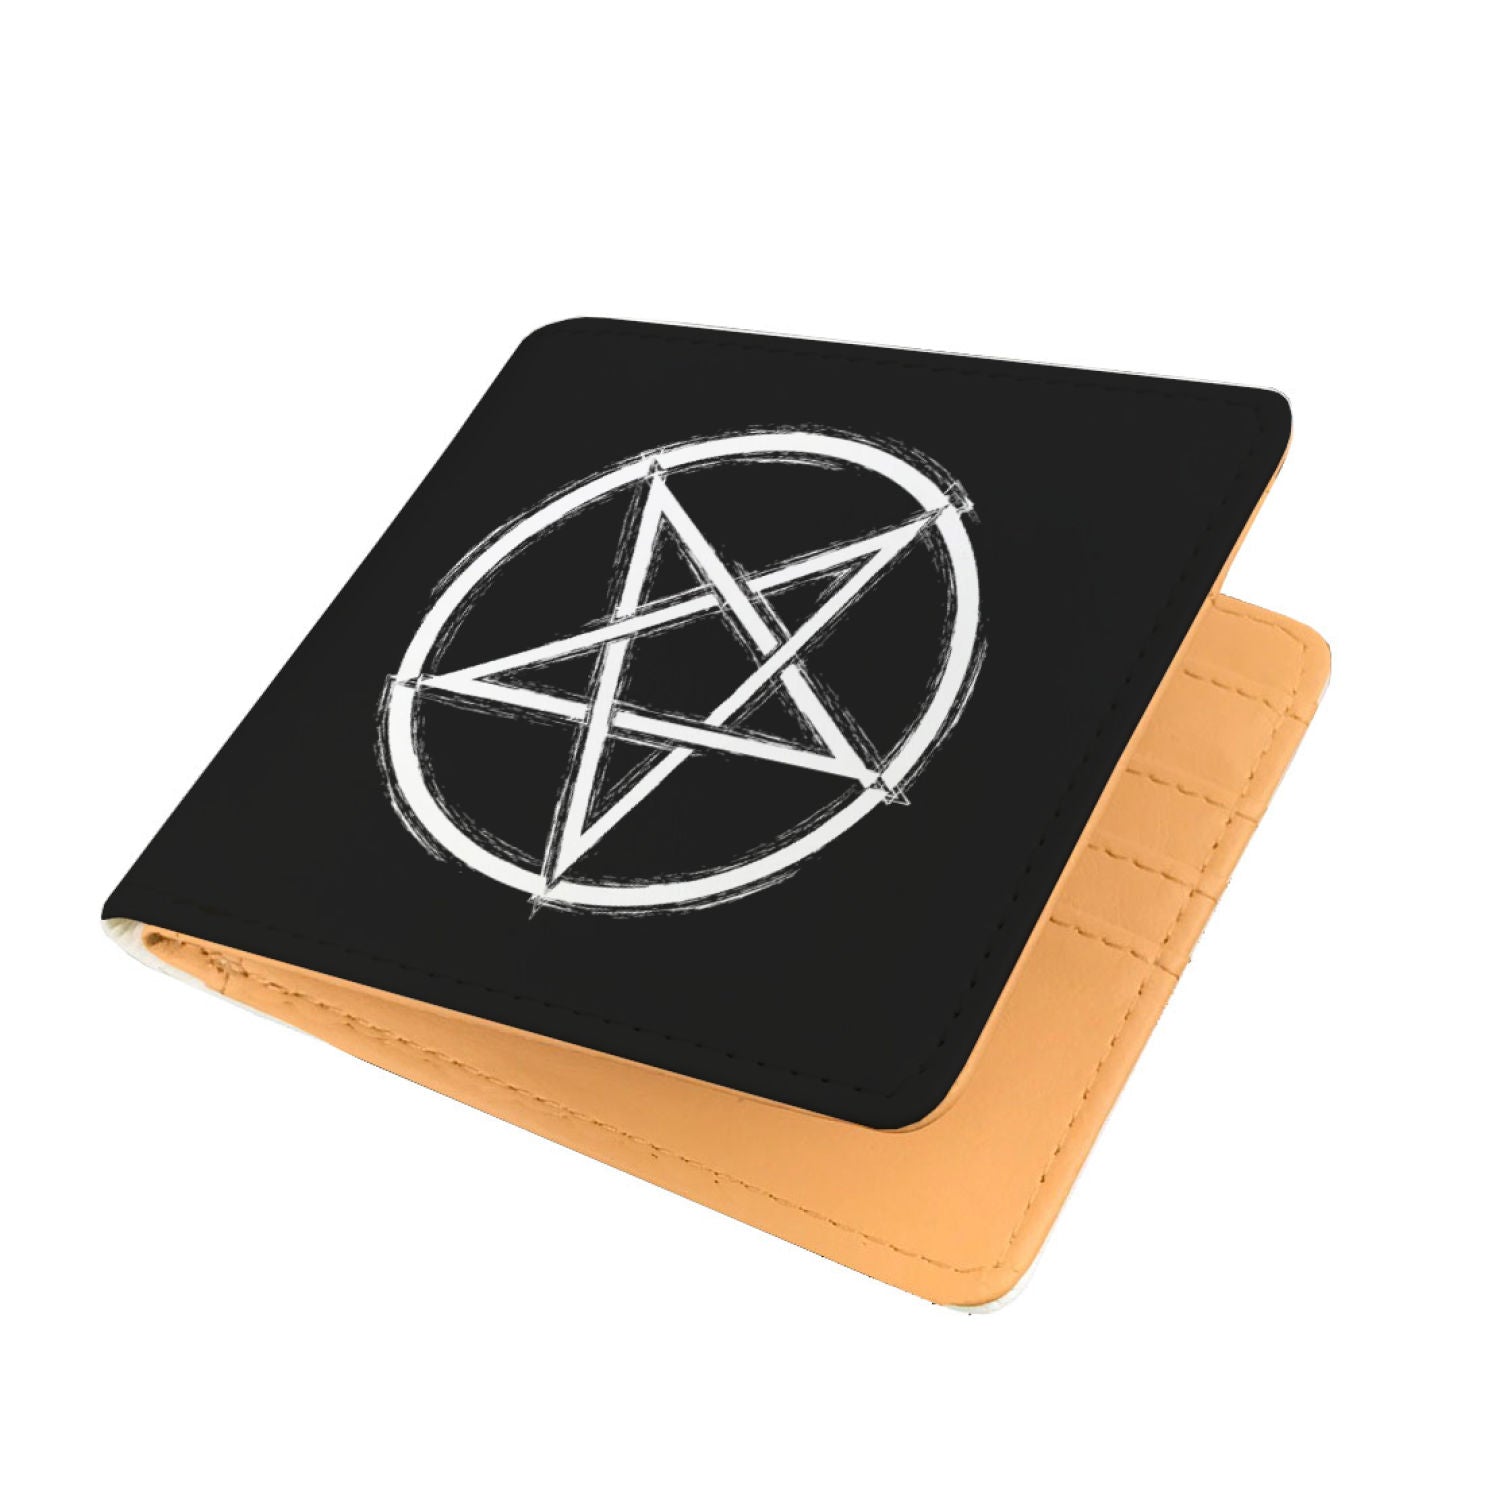 The S Pentagram wallet